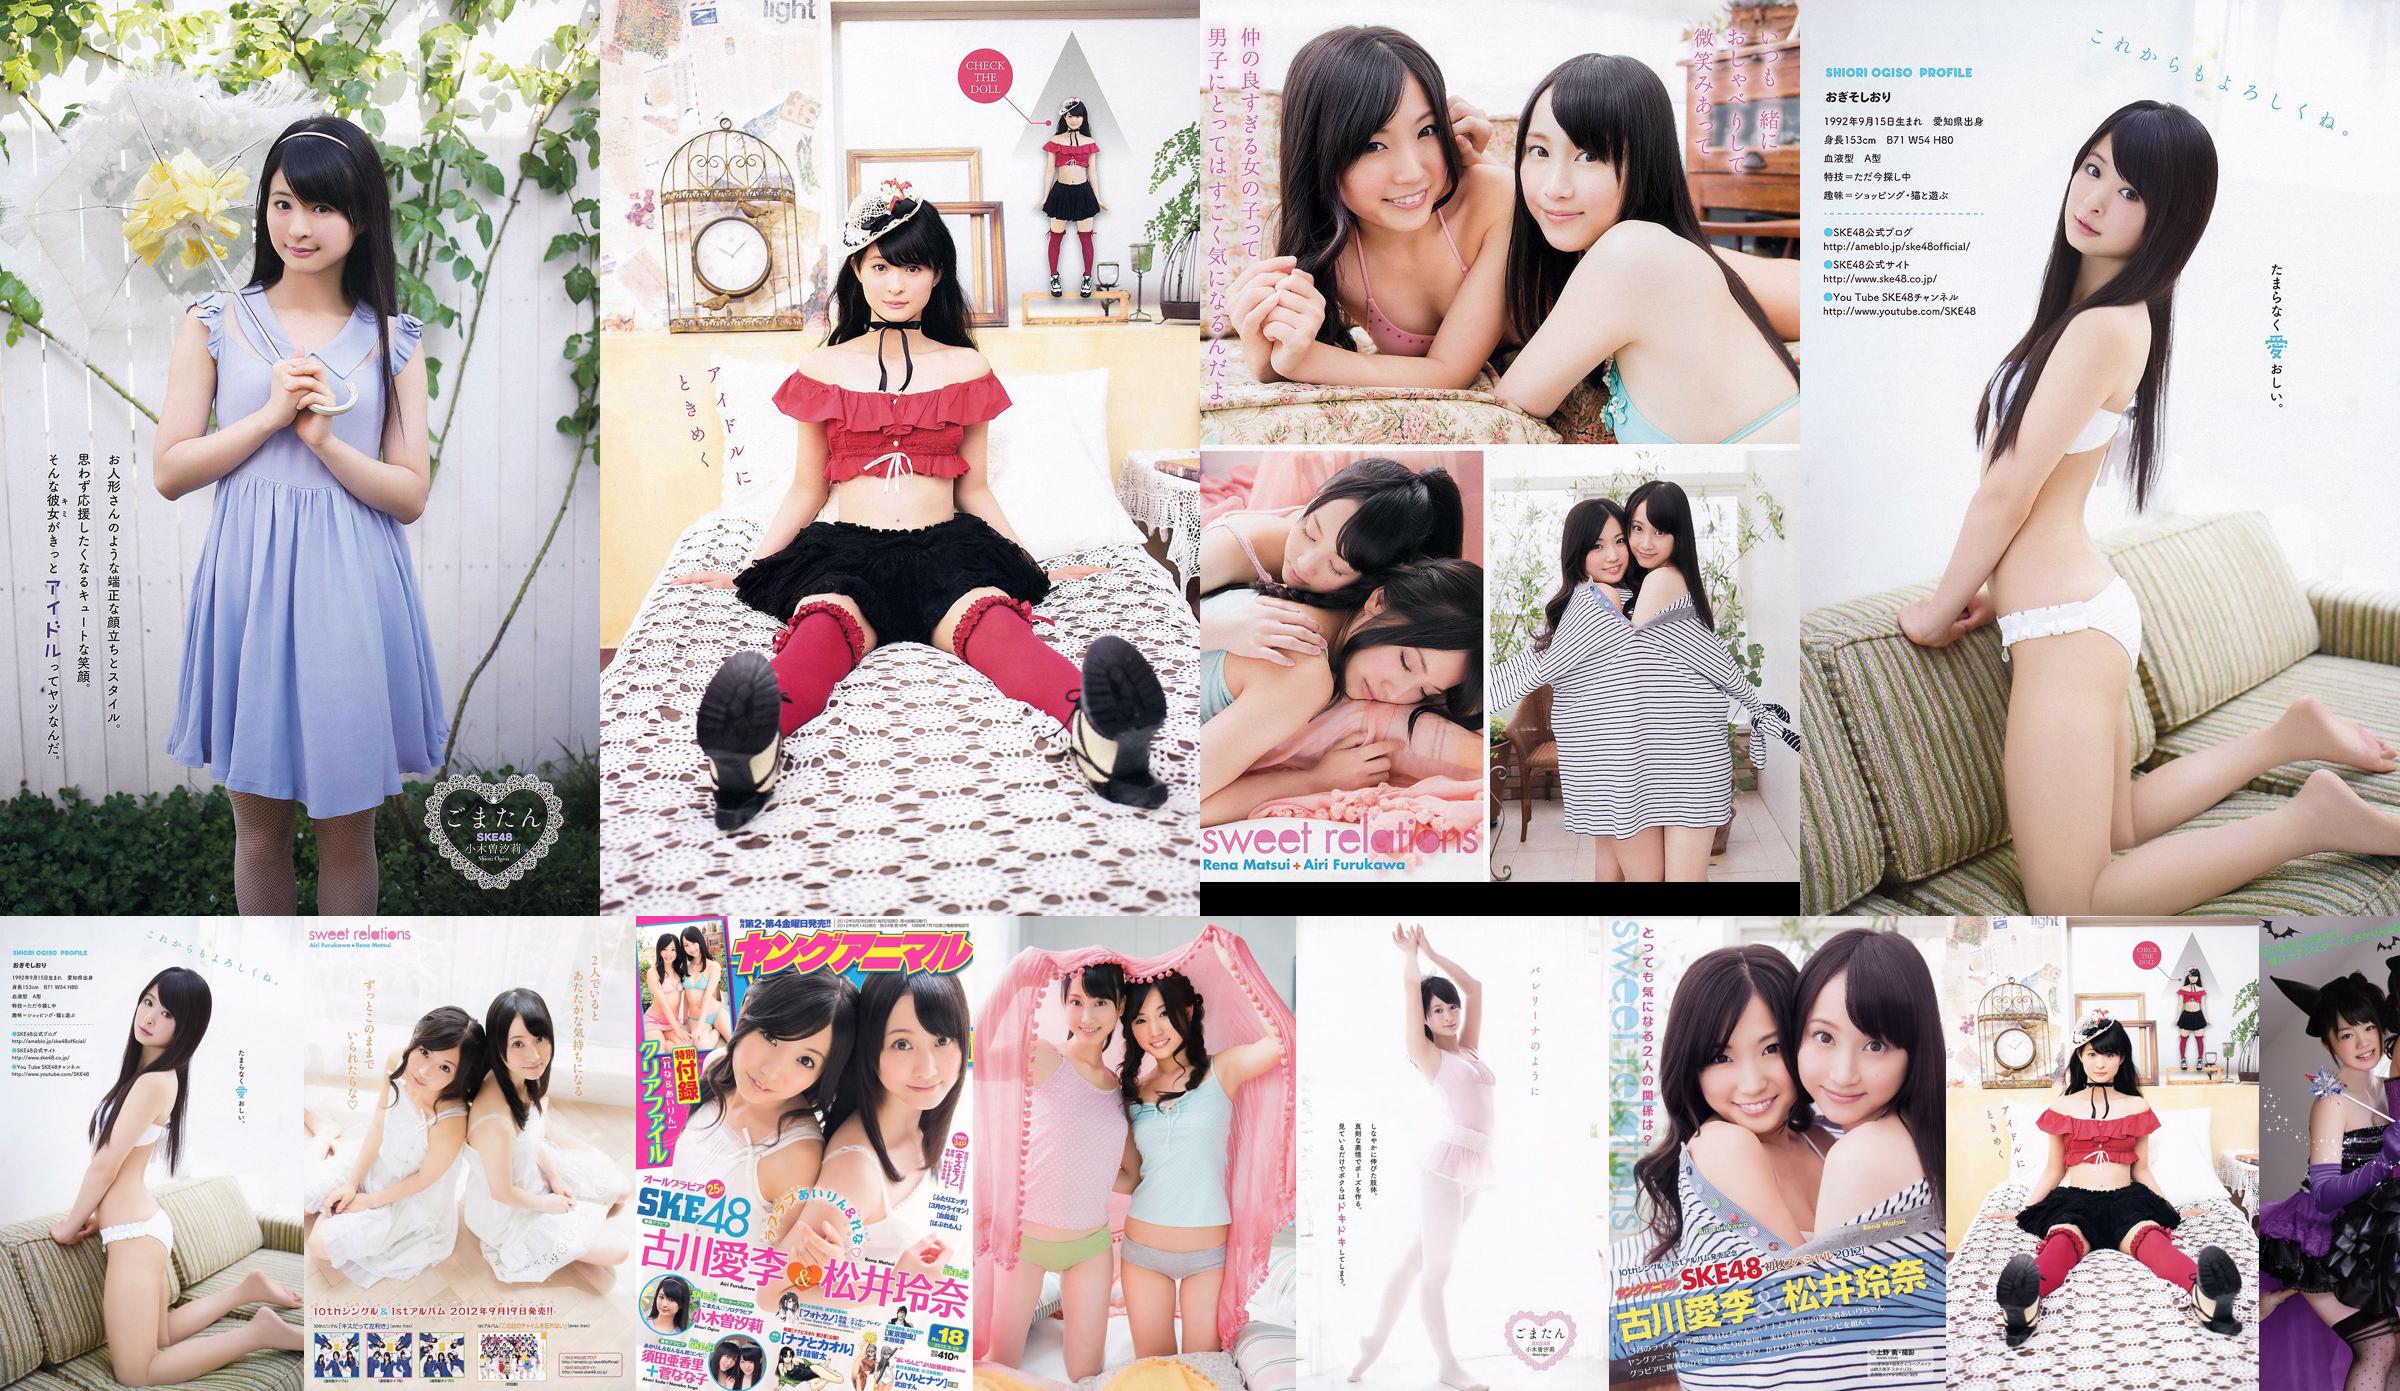 Ai Li Furukawa, Rena Matsui, Sasa Ogi, Aikari Suda [Animal joven] 2012 No.18 Photo Magazine No.54e441 Página 1